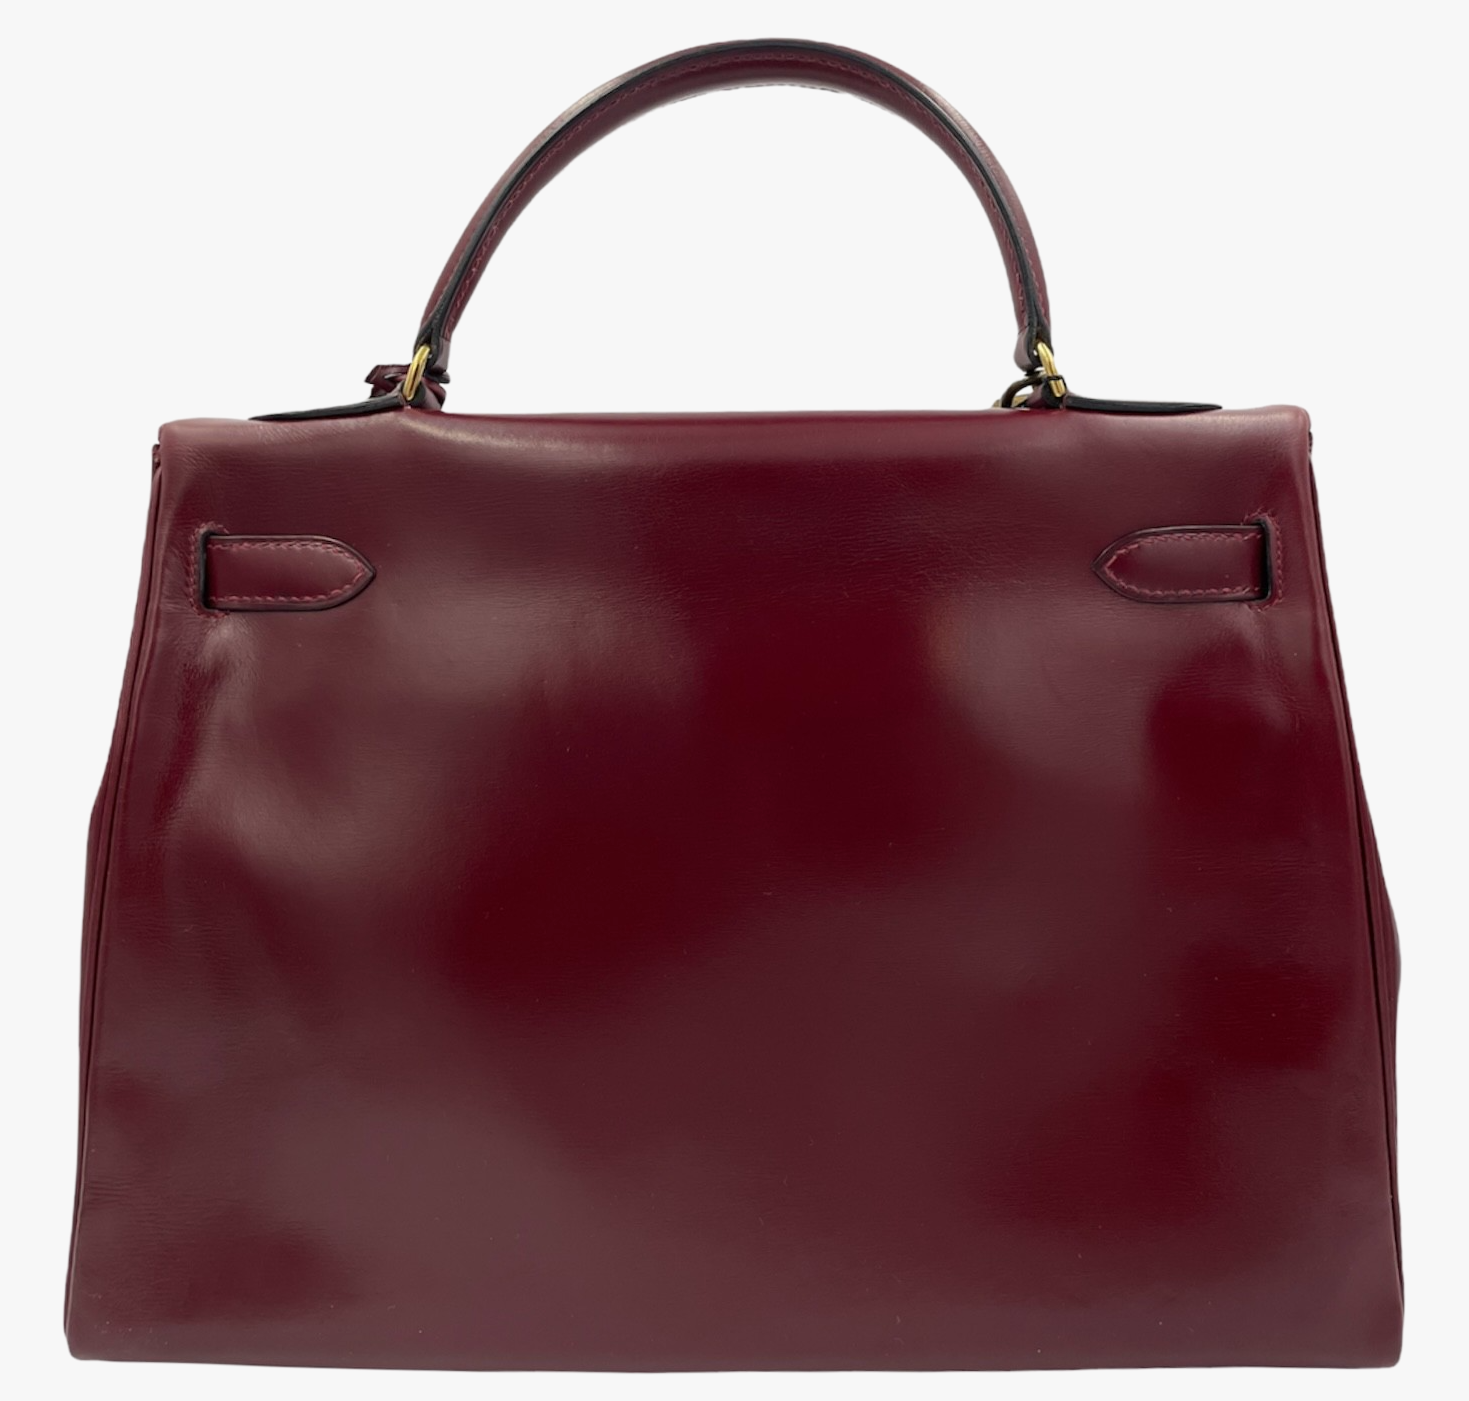 Vintage Hermes Kelly Bag In Burgundy Box Leather, 1976-1